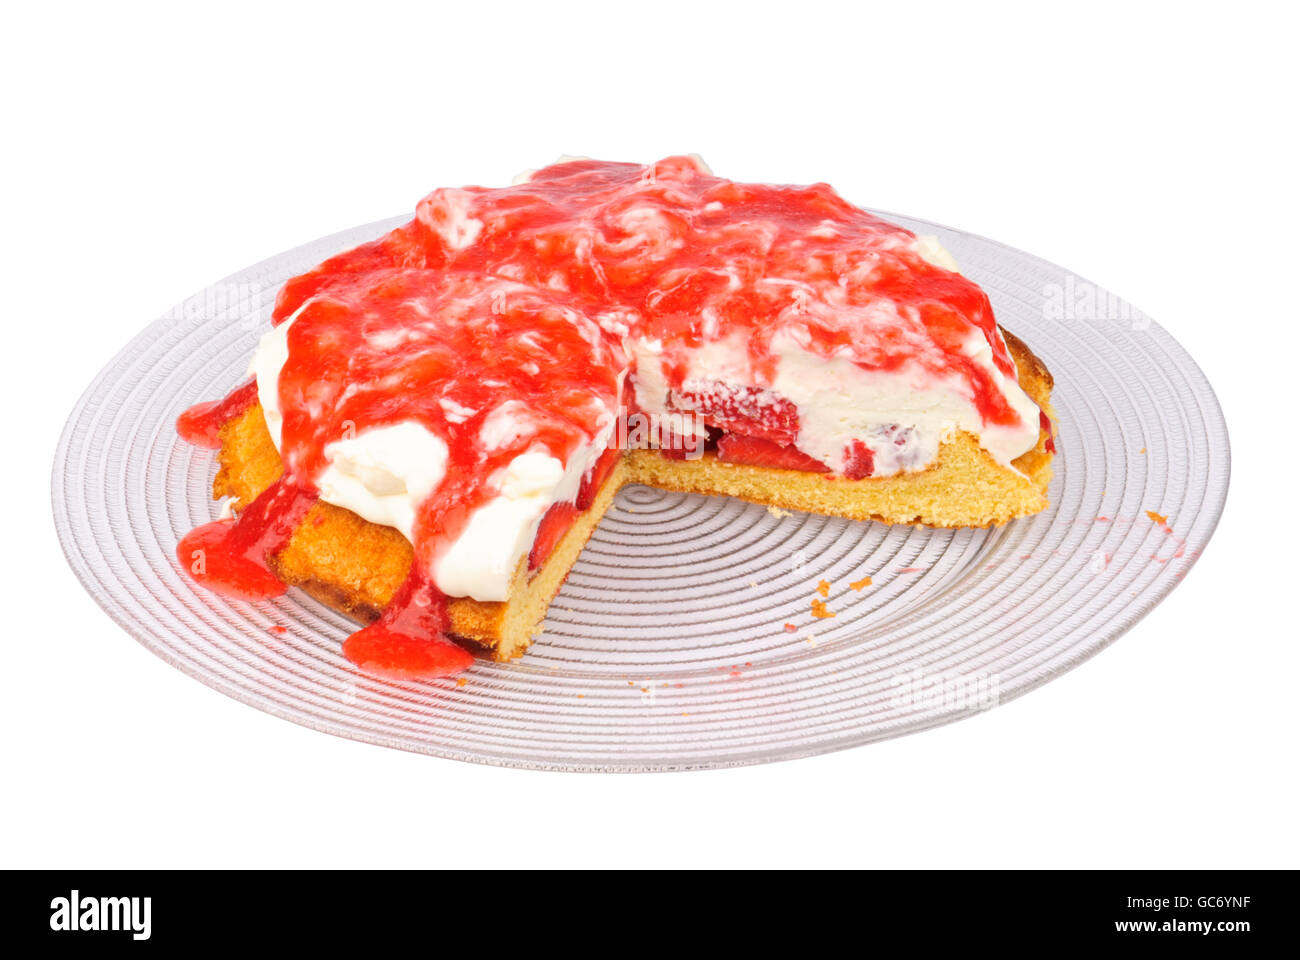 Erdbeer-Frischkäse Sahne Torte mit Erdbeer-Sauce auf einer Glasplatte, isoliert Stockfoto